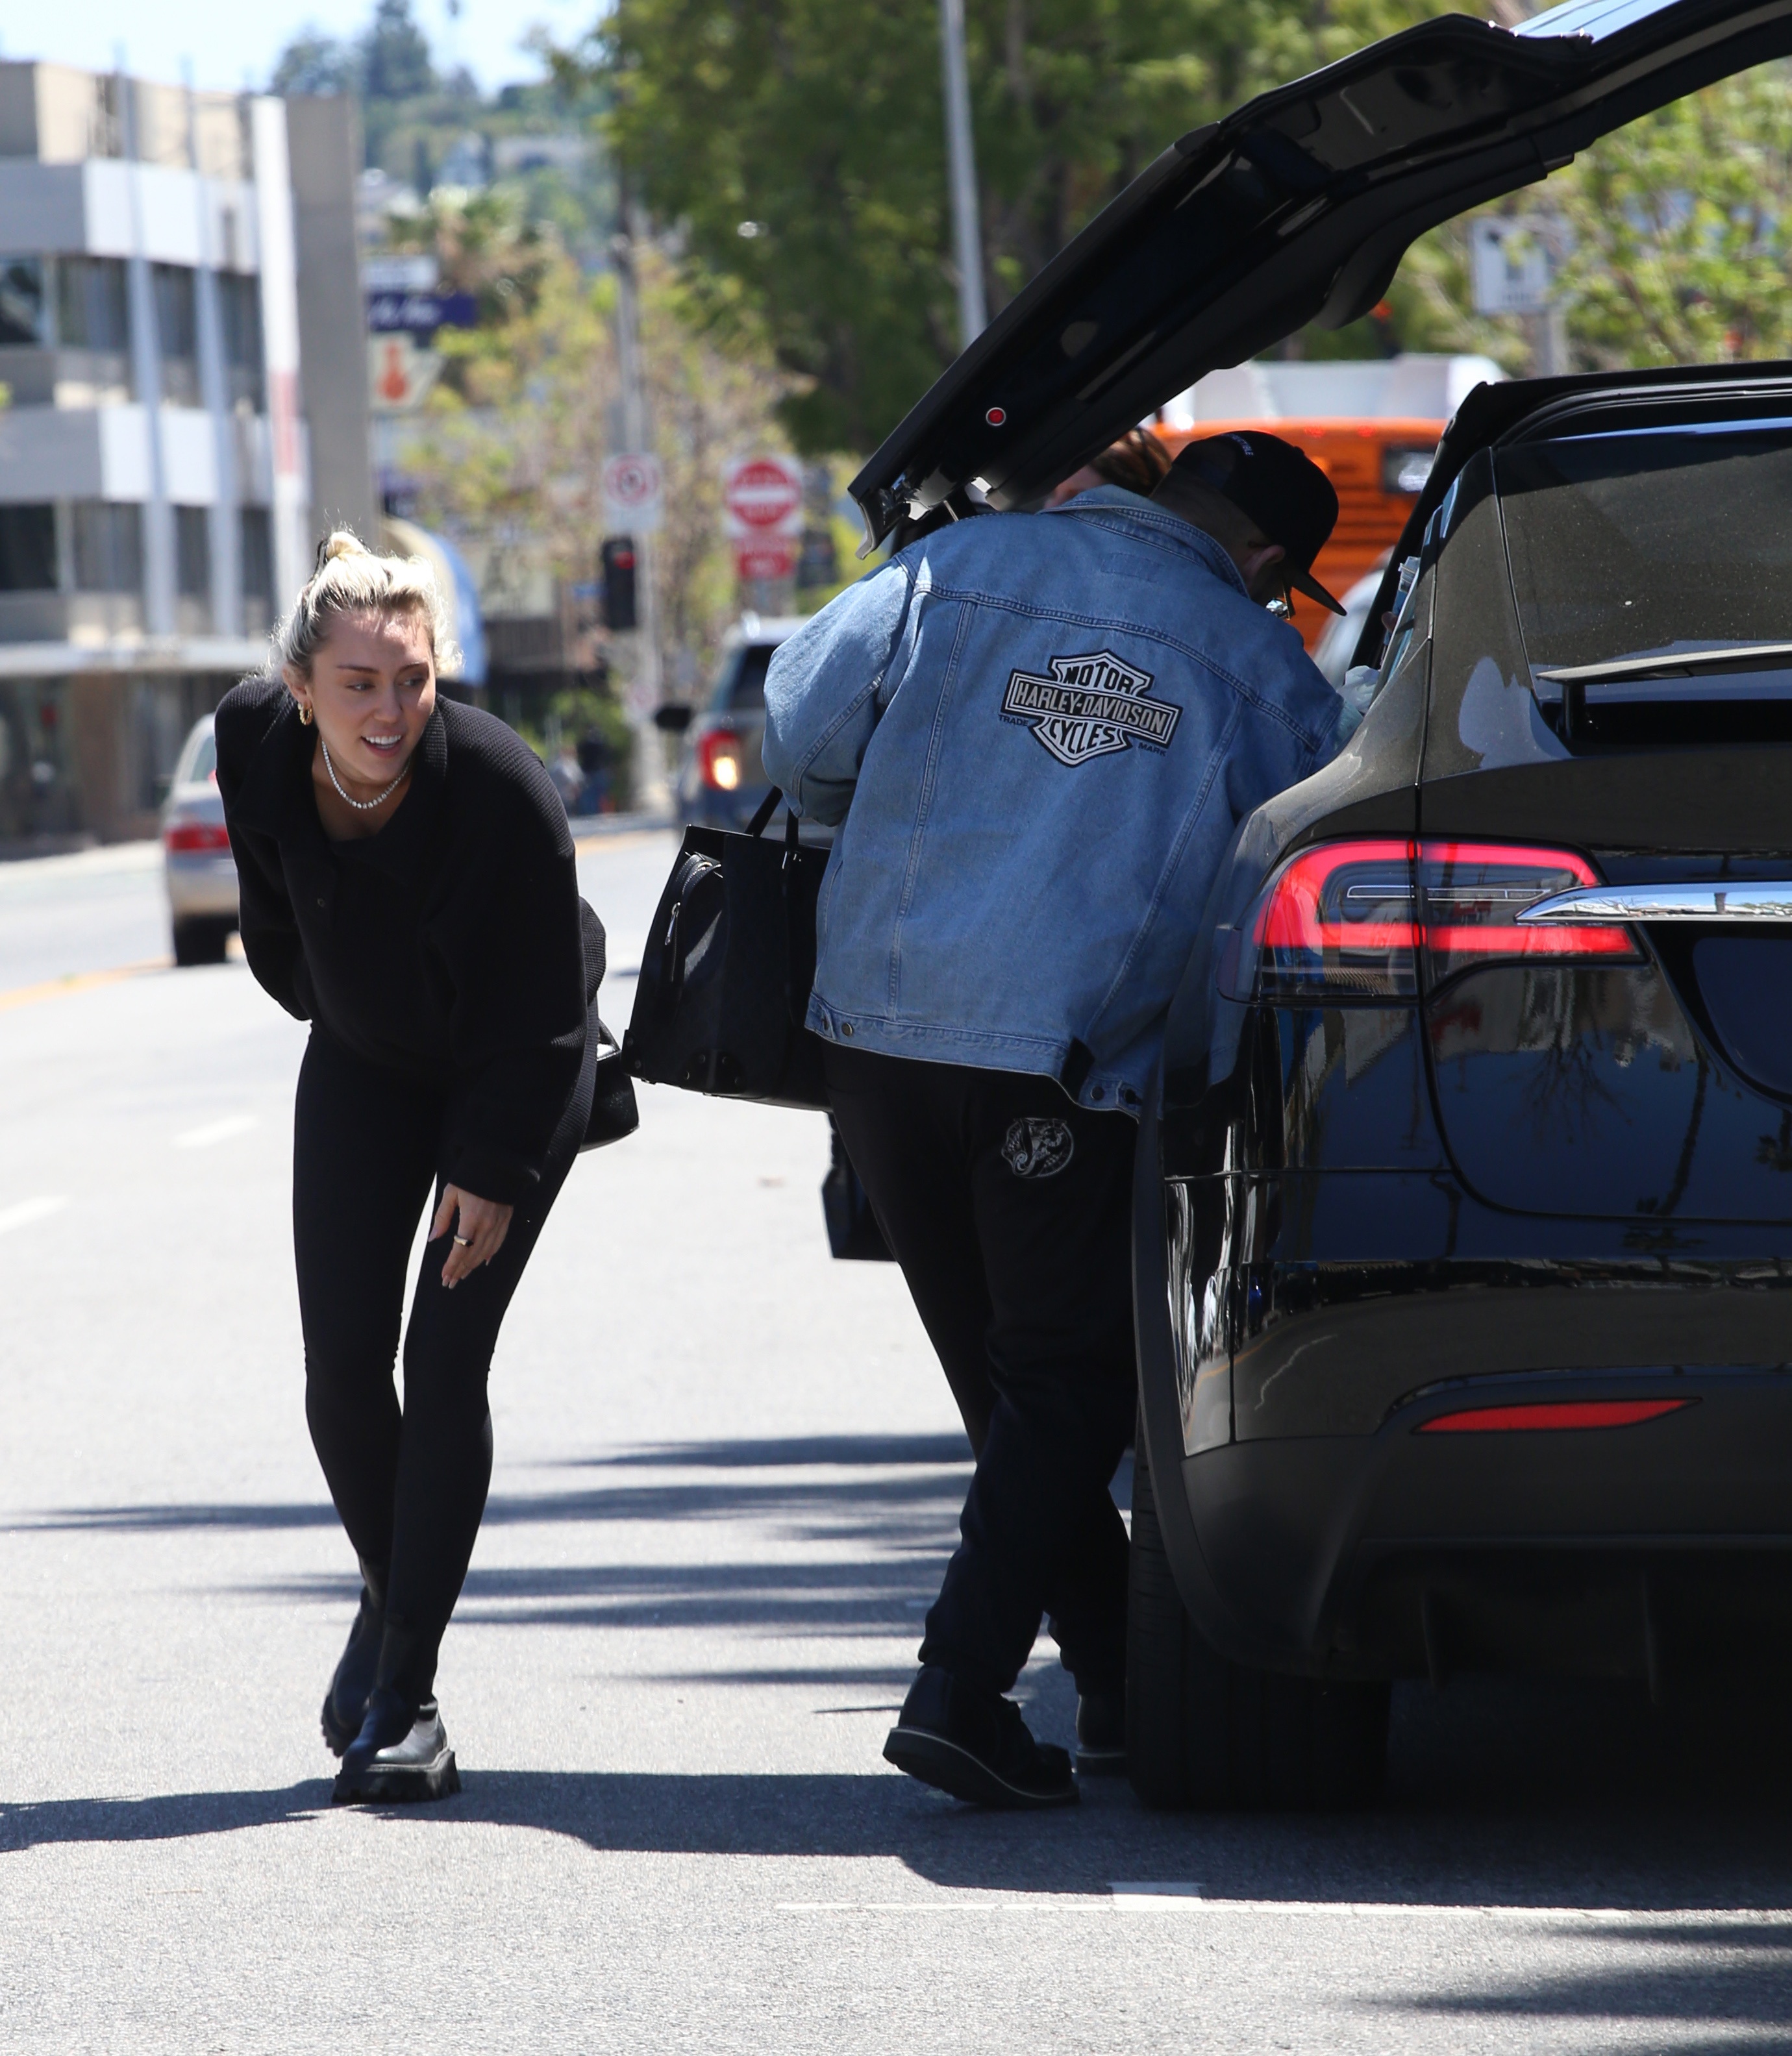 Miley Cyrus fue fotografiada cuando bajaba de su auto X Tesla y se dirigía a almorzar en el exclusivo restaurante Joan's on Third, en Los Ángeles. La artista se reunió allí con con un grupo de amigos. Lució un look total black de leggins, tapado, borcegos y cartera de cuero (Fotos: The Grosby Group)